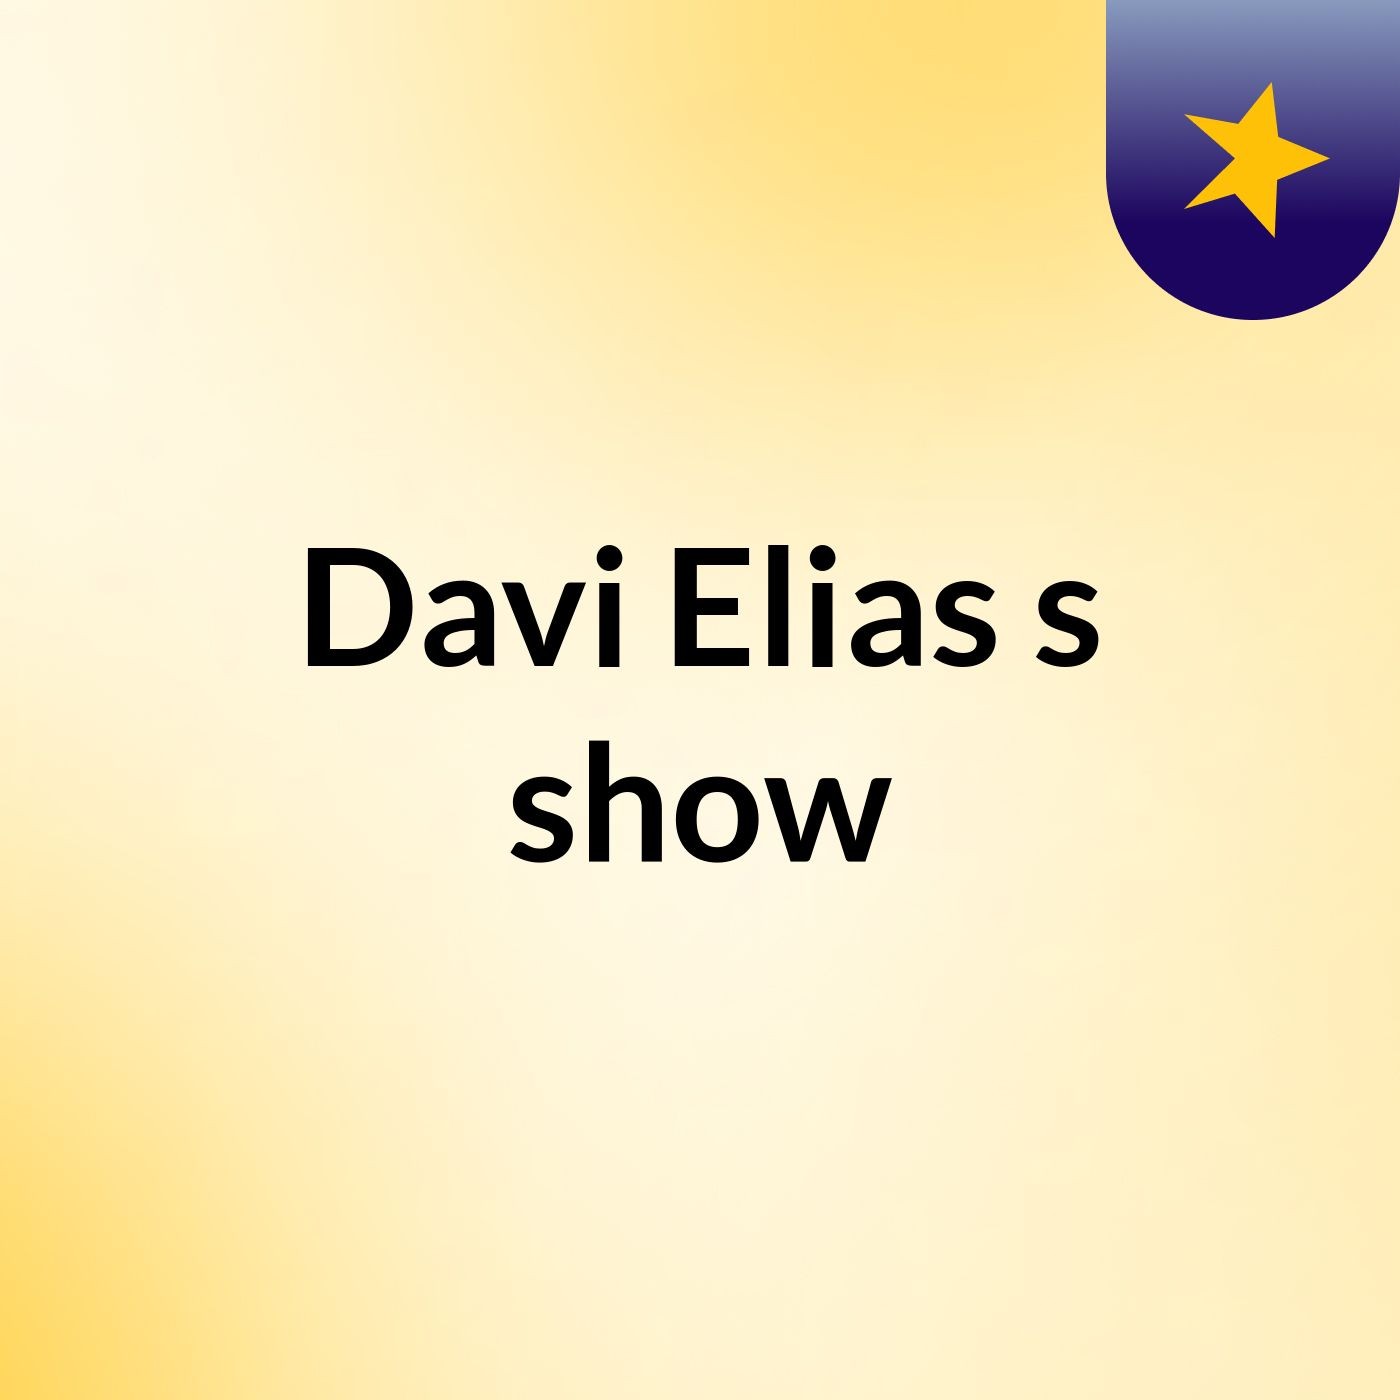 Davi Elias's show